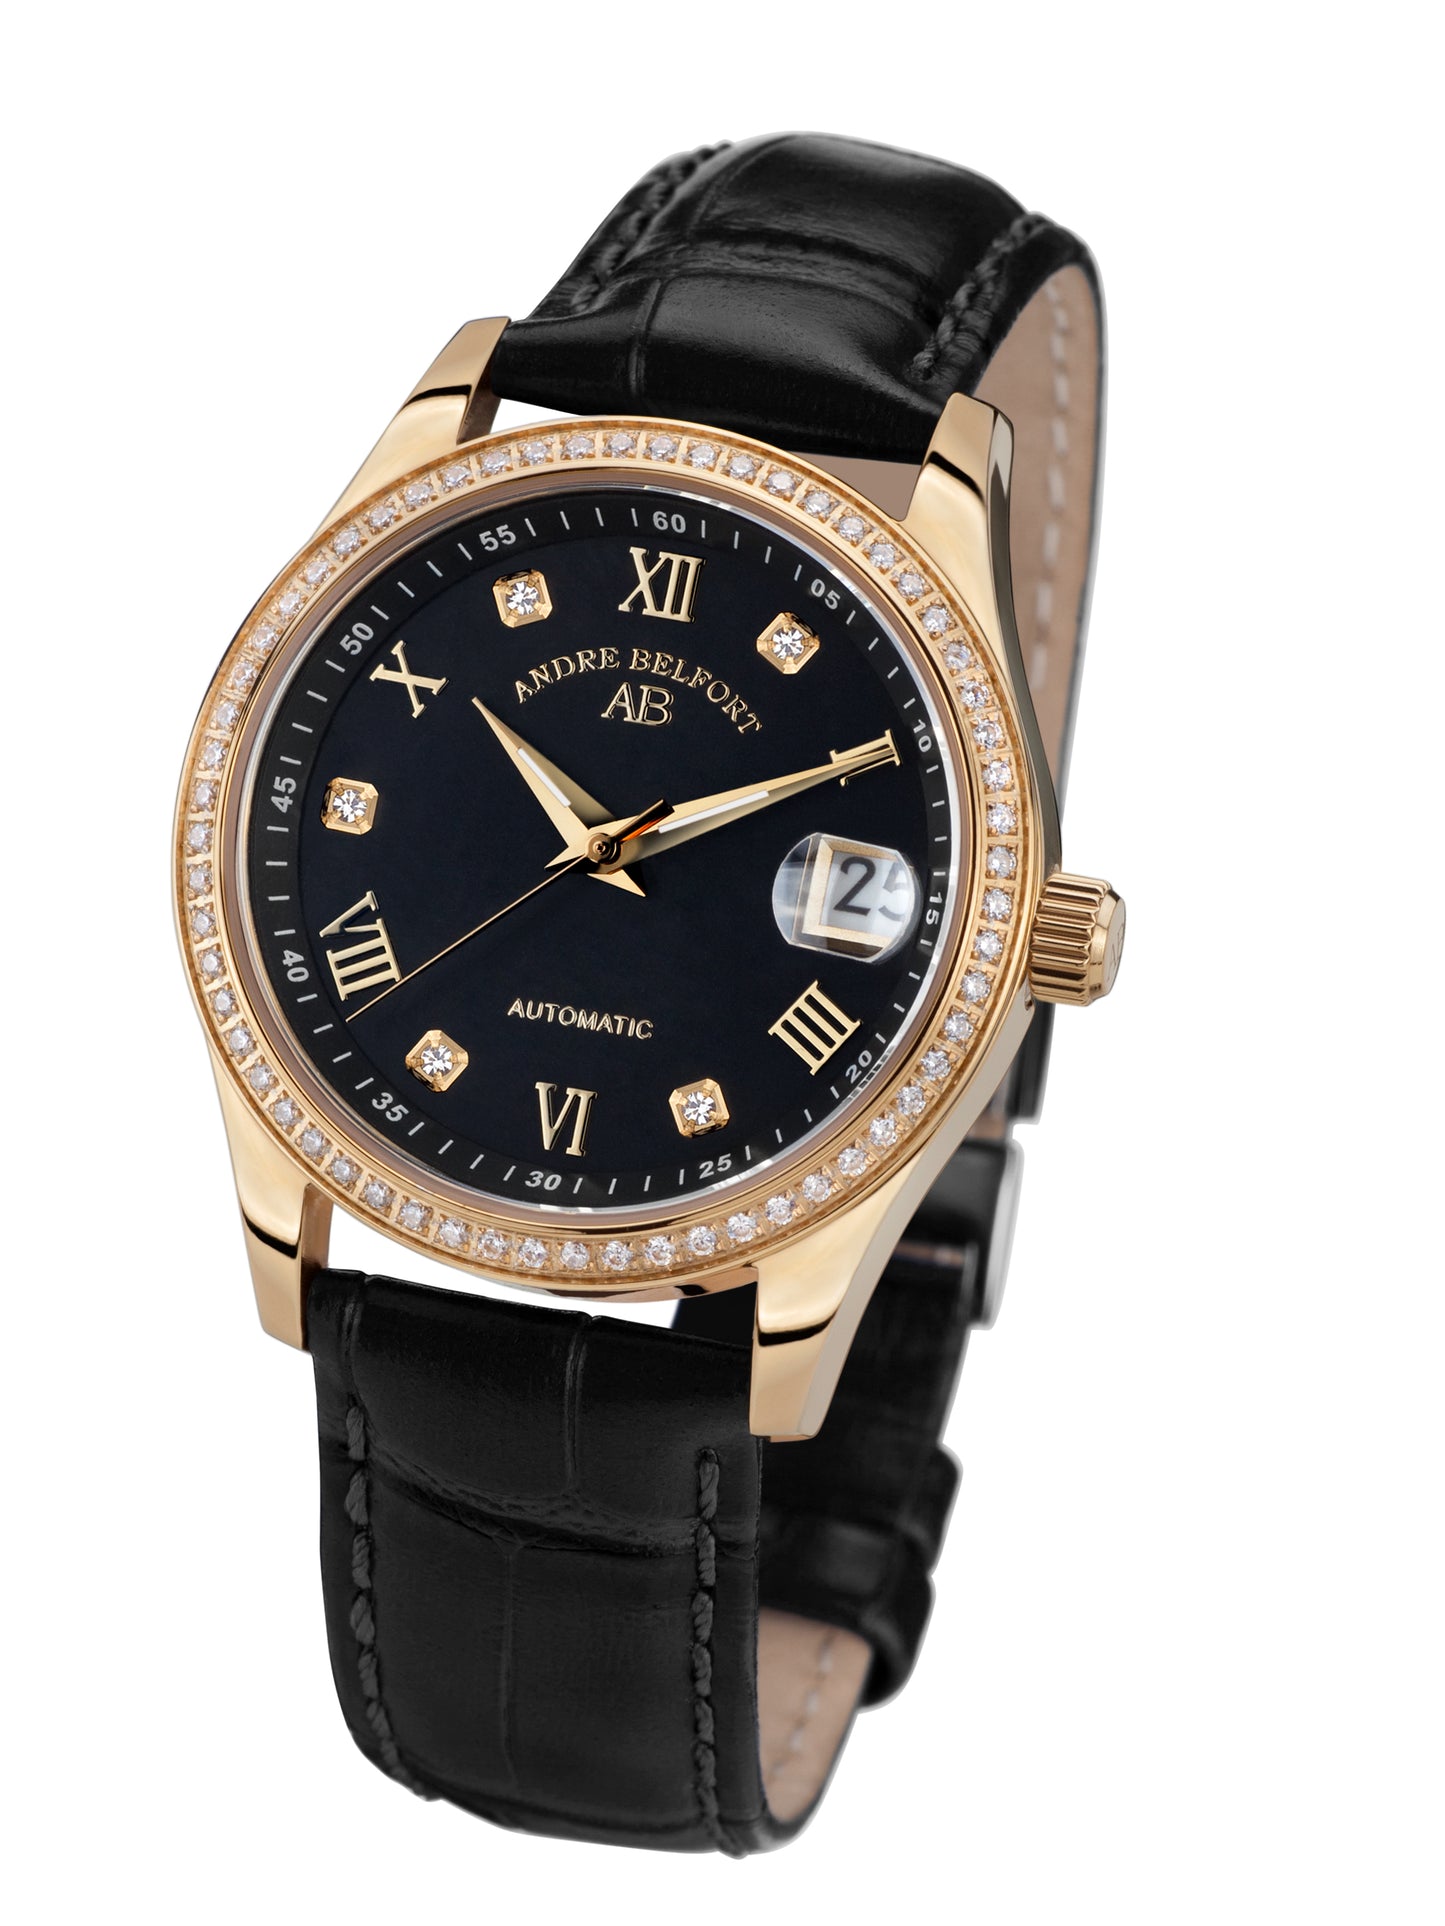 Automatic watches — Déméter — André Belfort — gold black leather